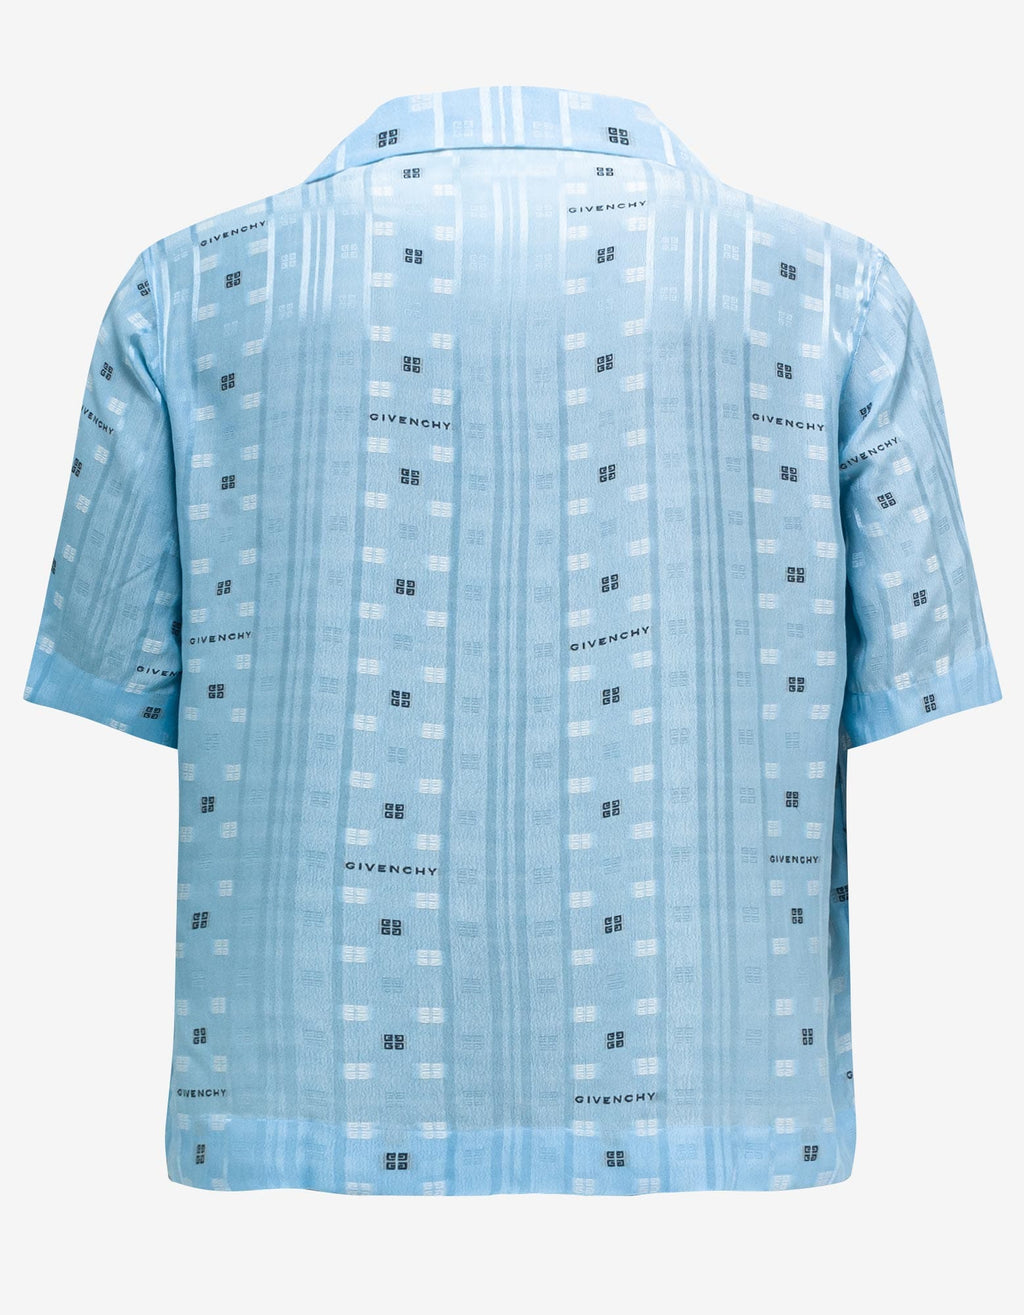 Givenchy Blue 4G Jacquard Hawaiian Shirt